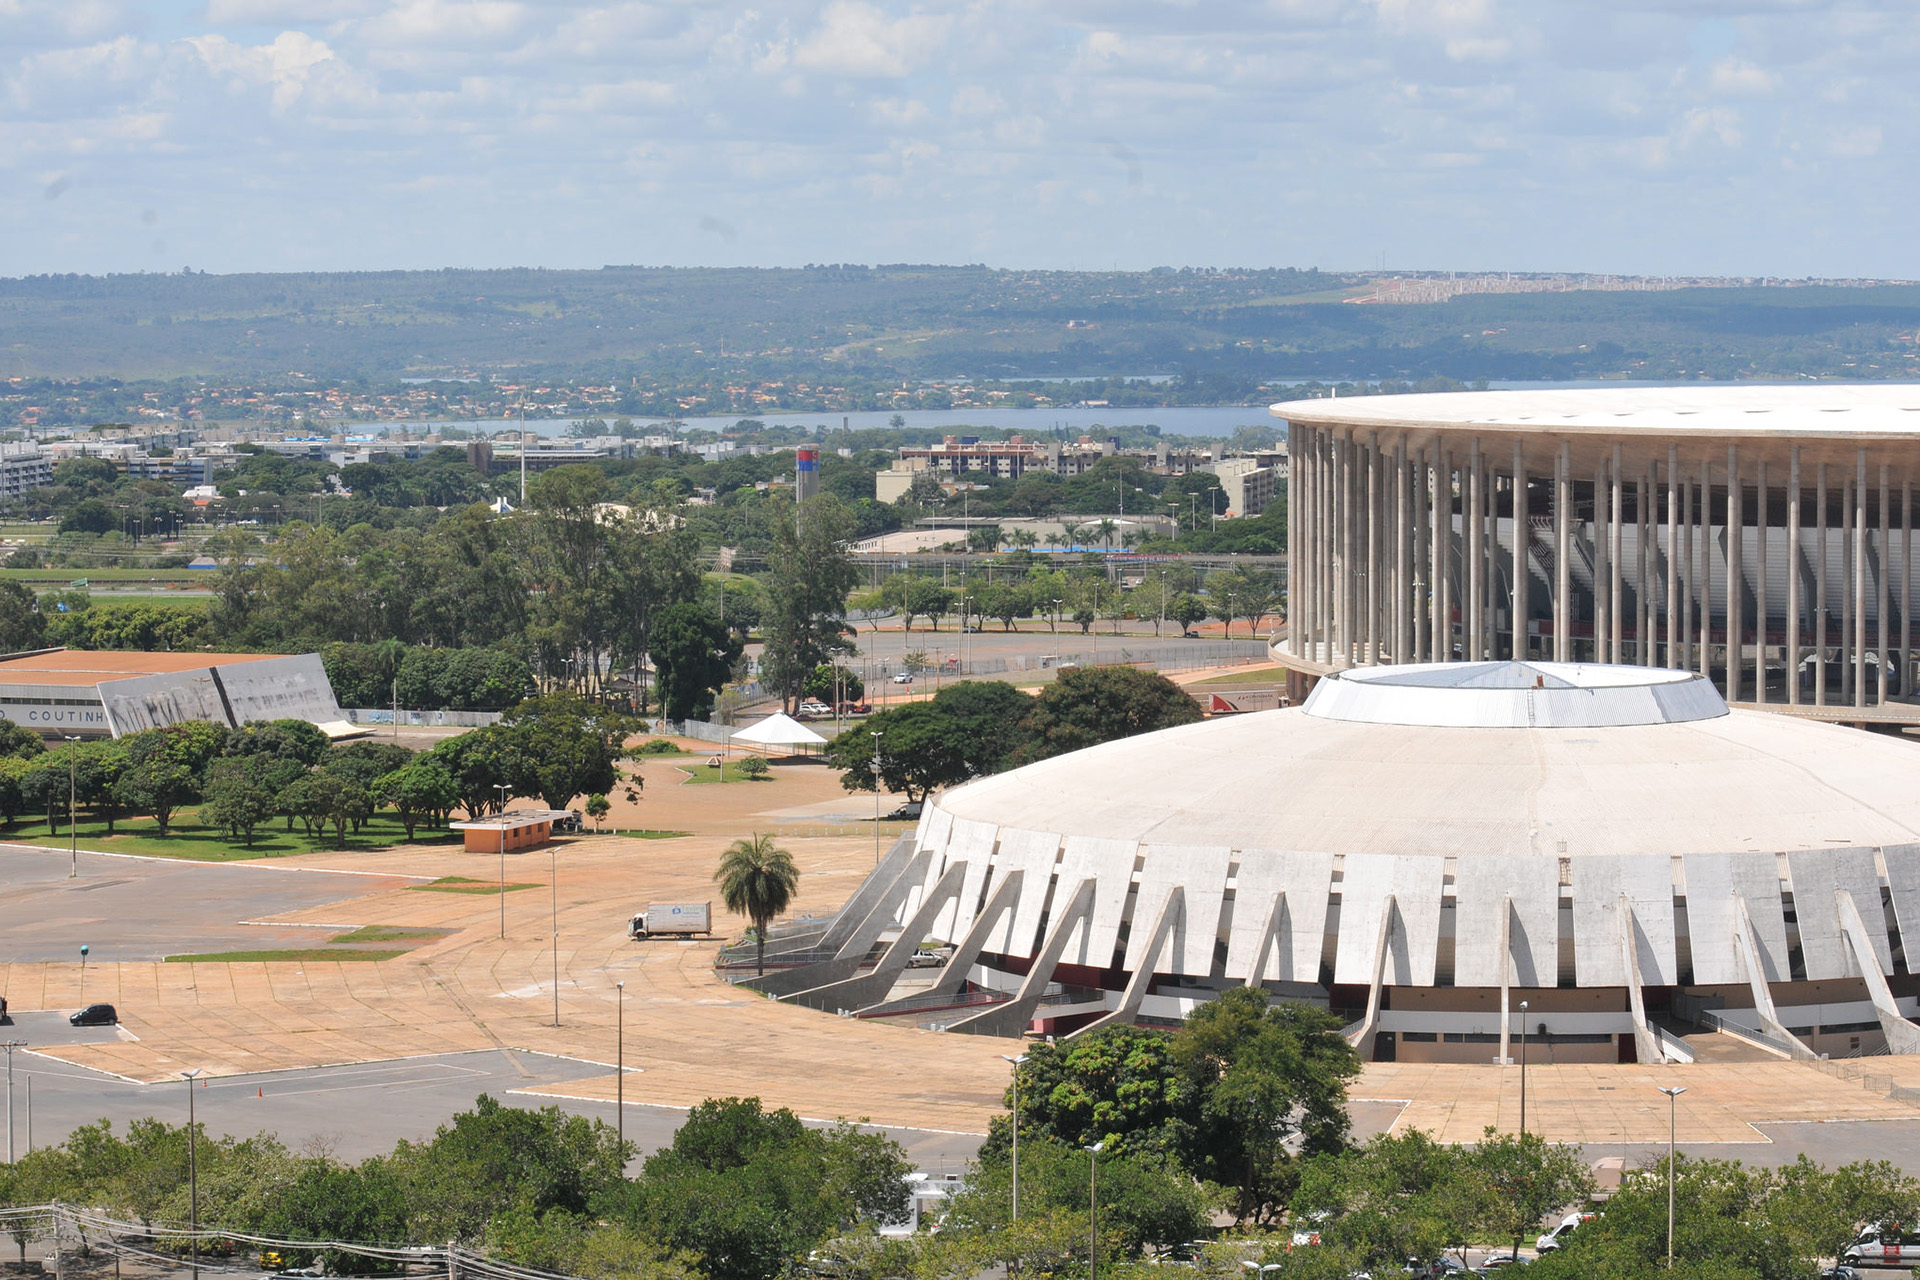 O ArenaPlex, composto pelo Estádio Mané Garrincha, o Ginásio Nilson Nelson, e o Complexo Aquático Cláudio Coutinho.